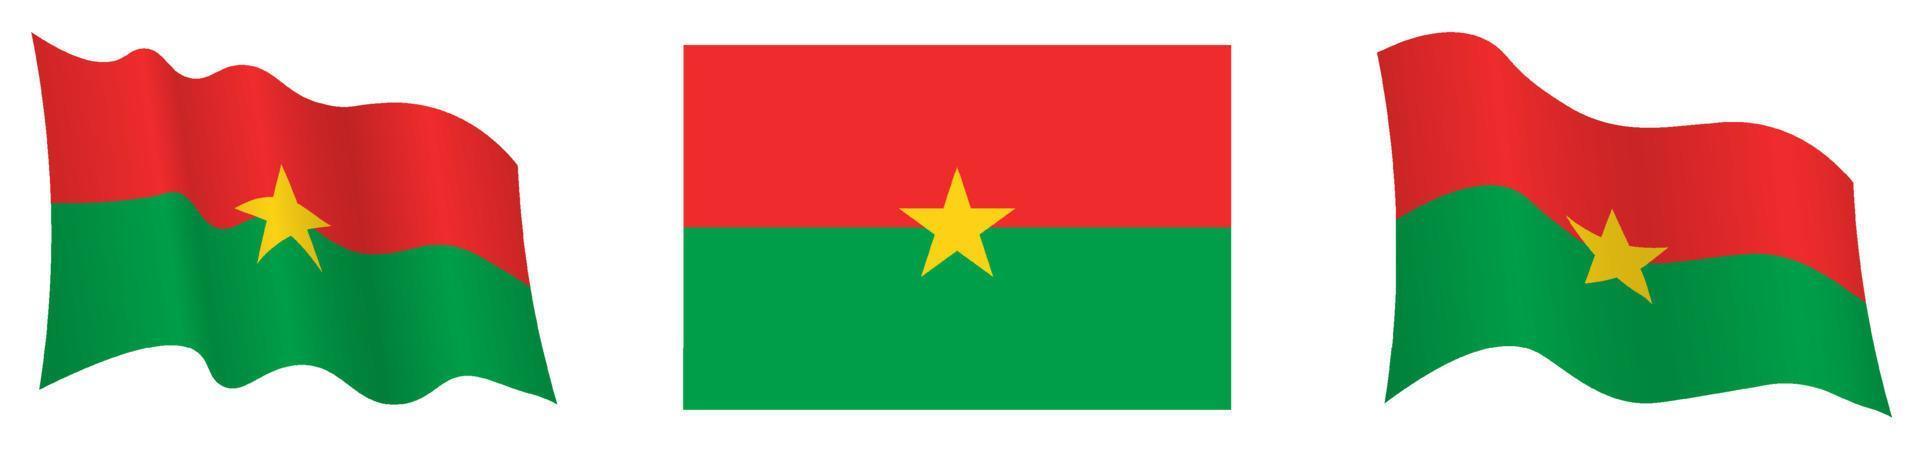 flagga av Burkina faso i statisk placera och i rörelse, fladdrande i vind i exakt färger och storlekar, på vit bakgrund vektor